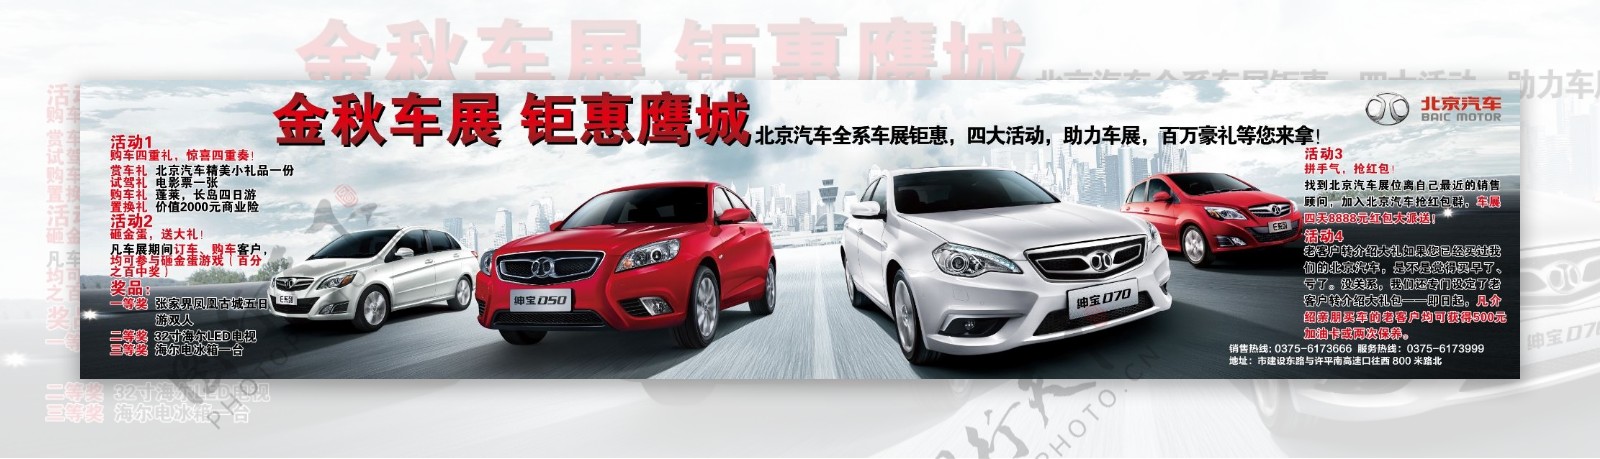 北京汽车车展背景图片